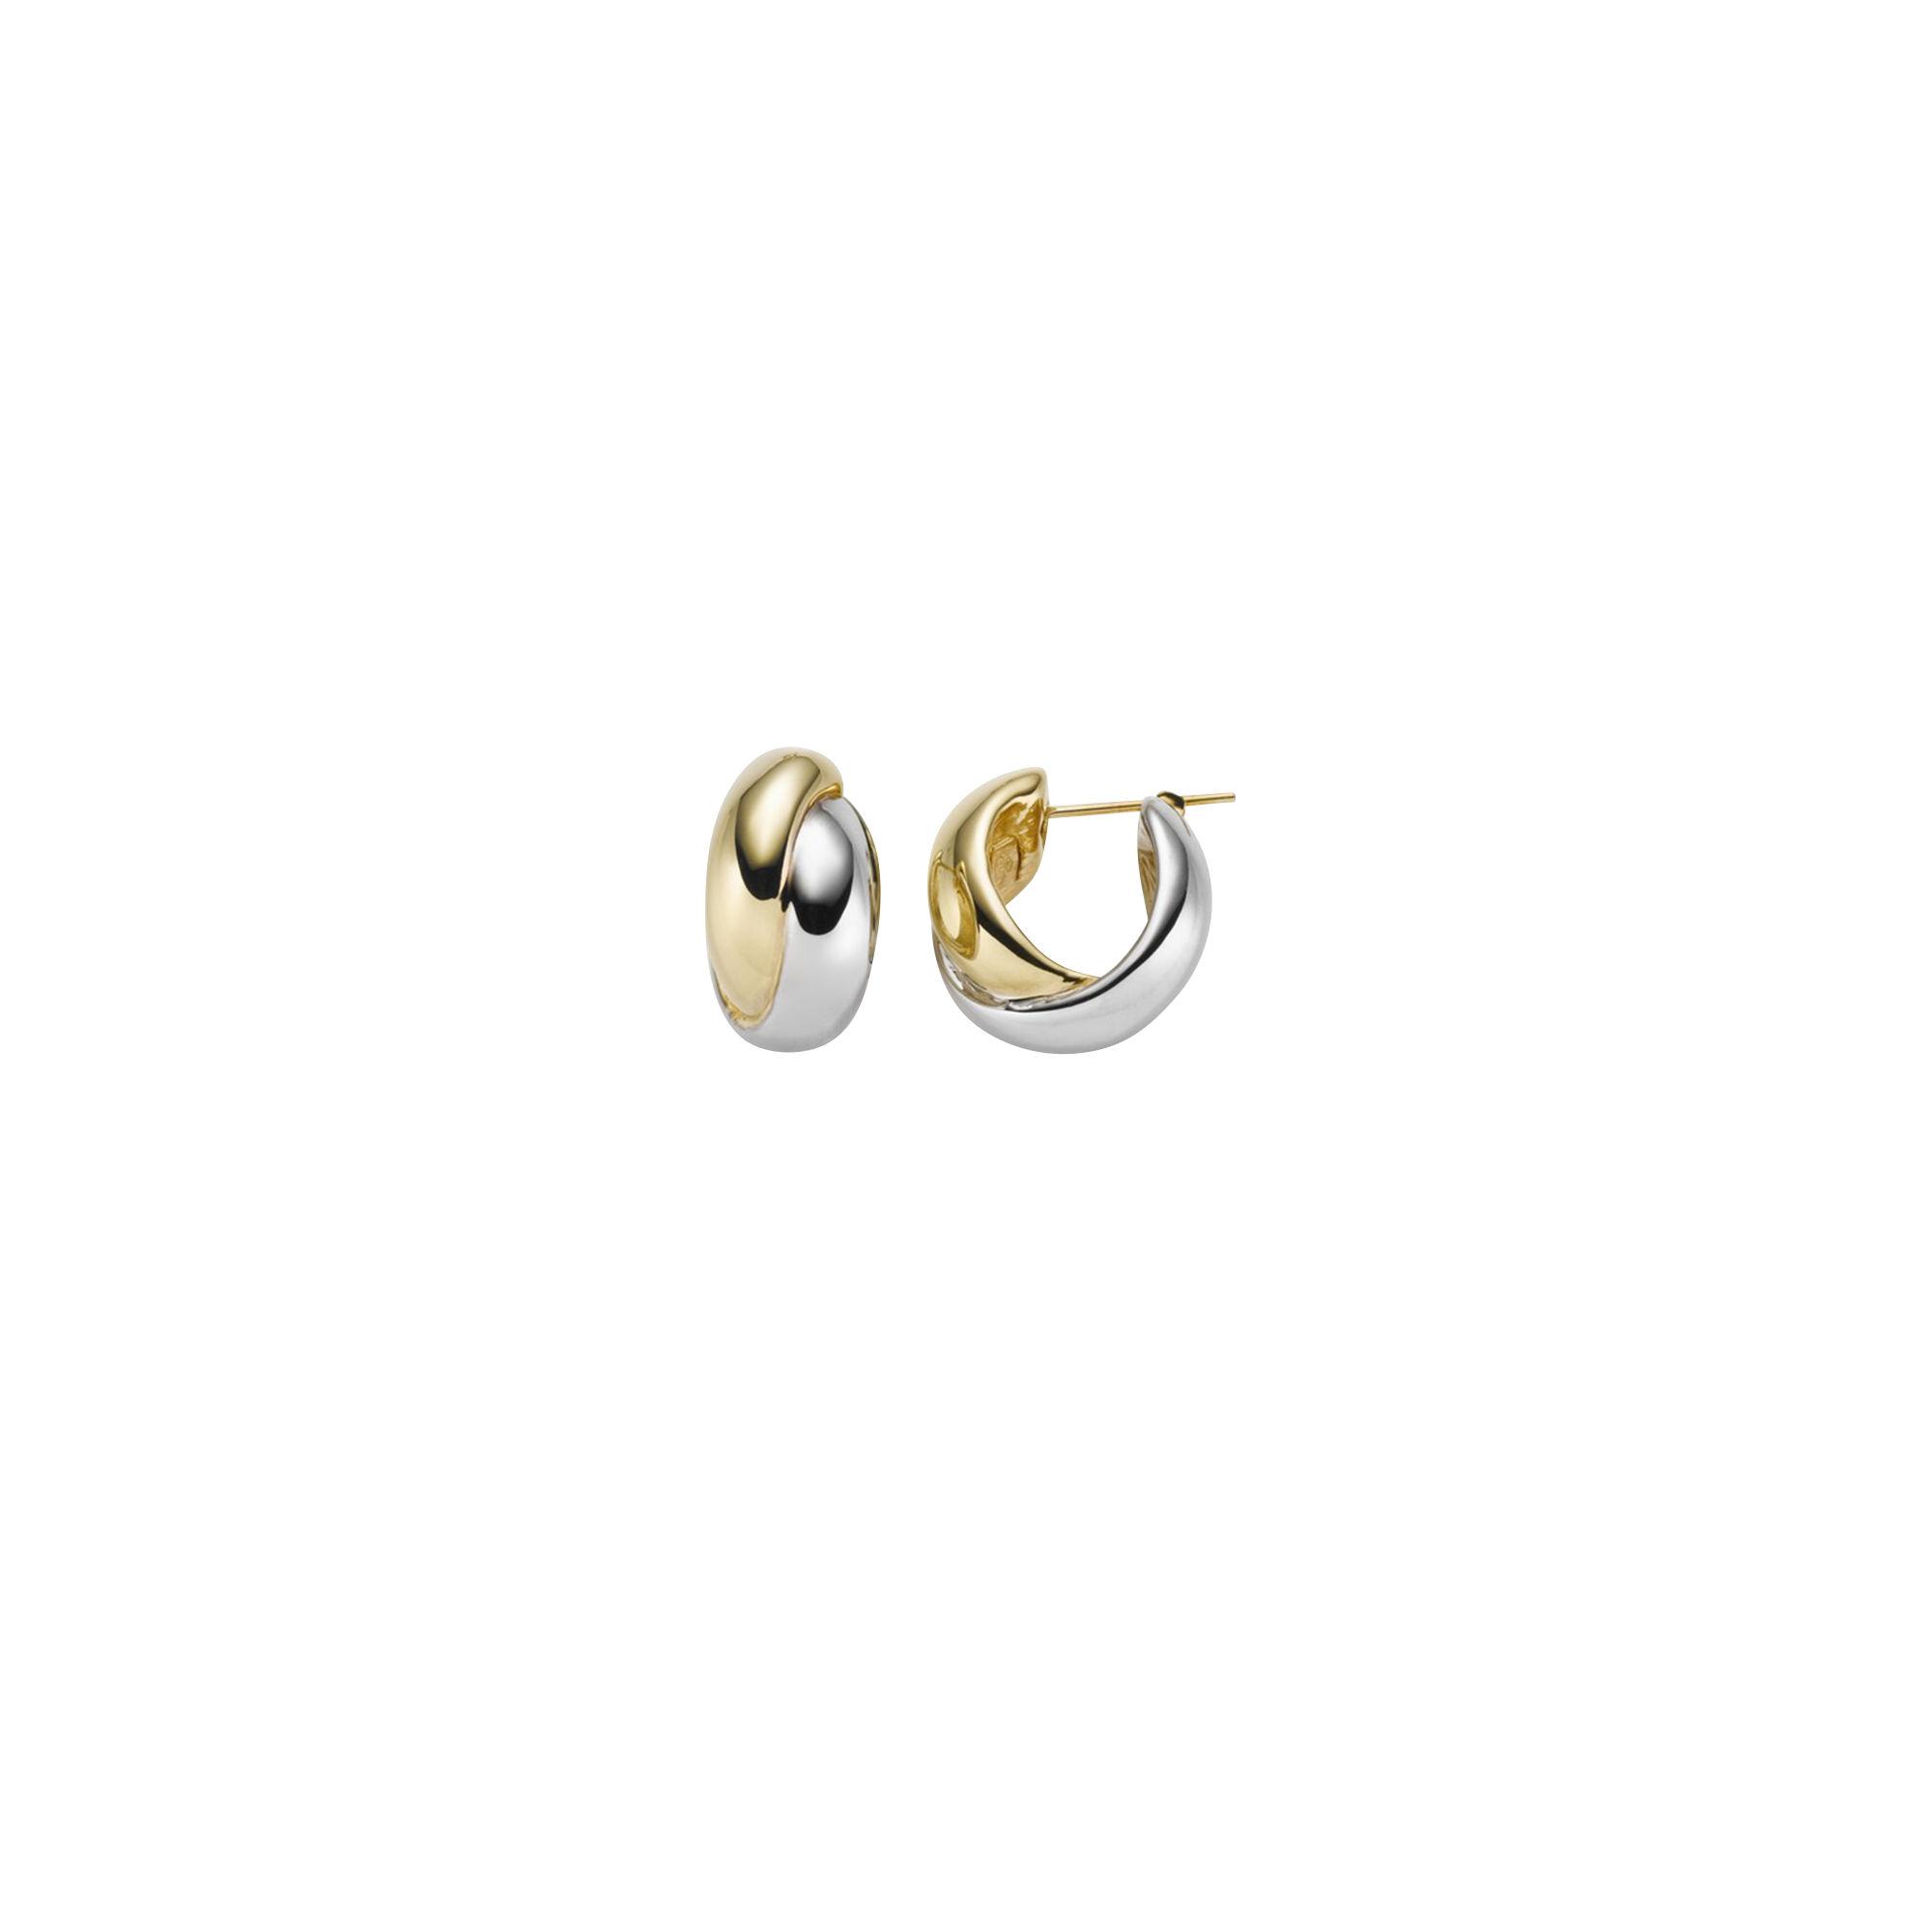 Brogle Selection Essentials hoop earrings 585 12mm